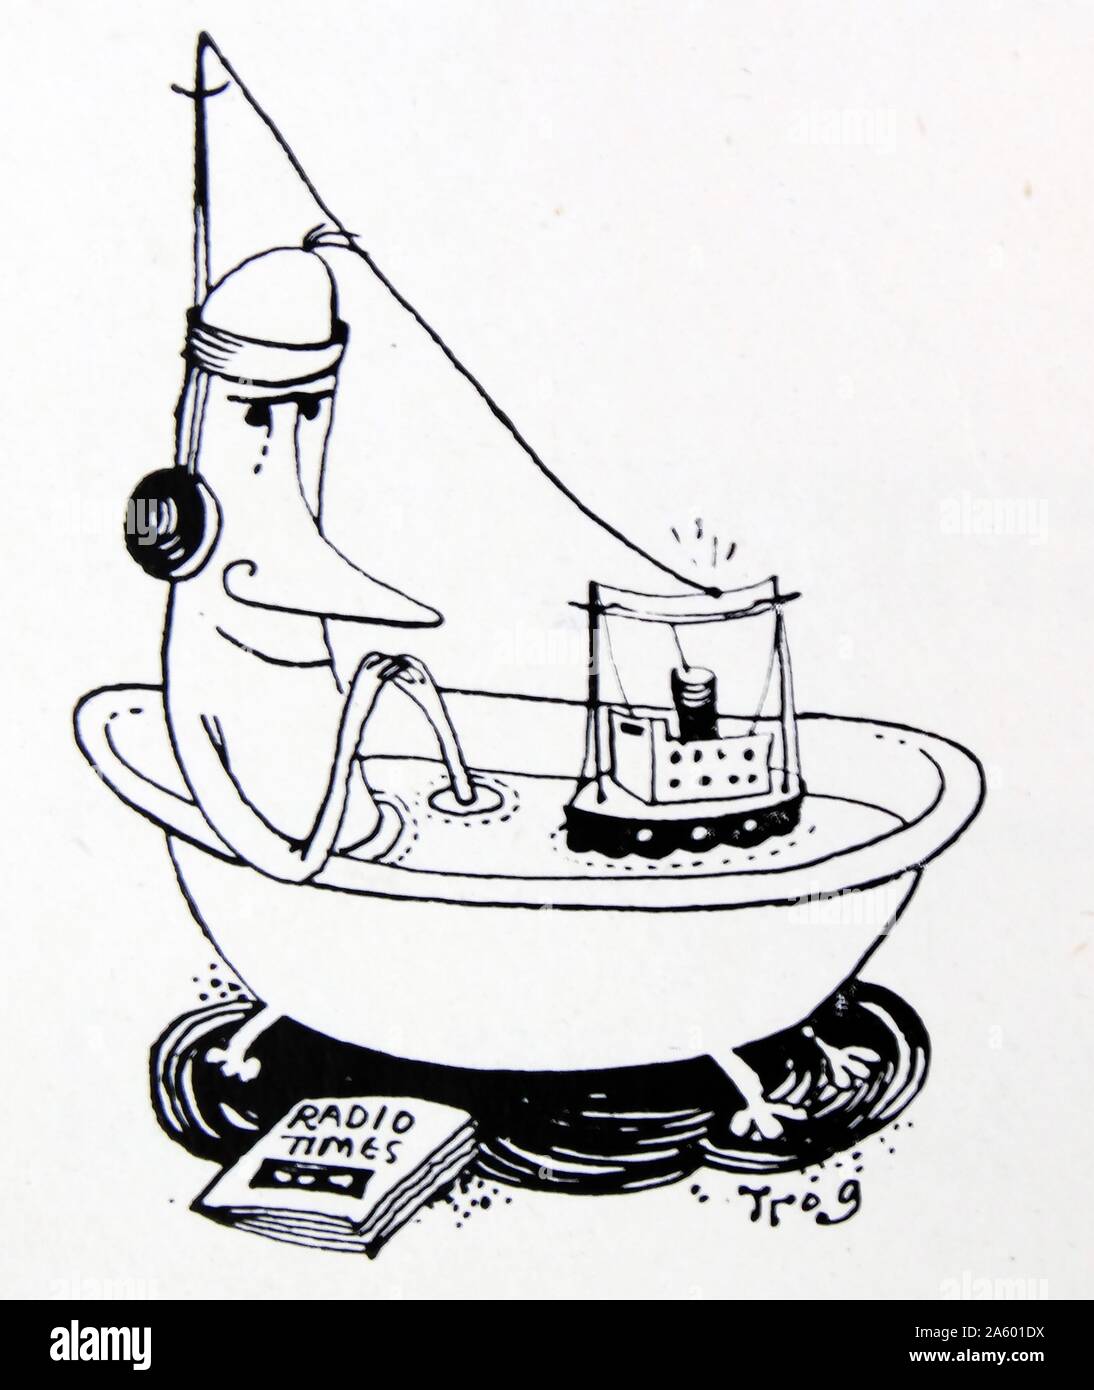 Cartoon di un uomo in un bagno con un galleggiante radio. Da Walter Ernest "Wally" Fawkes (nato 1924). Jazz British-Canadian clarinettista e un vignettista satirico. Come fumettista ha generalmente funzionato sotto il nome di 'Trog' . Foto Stock